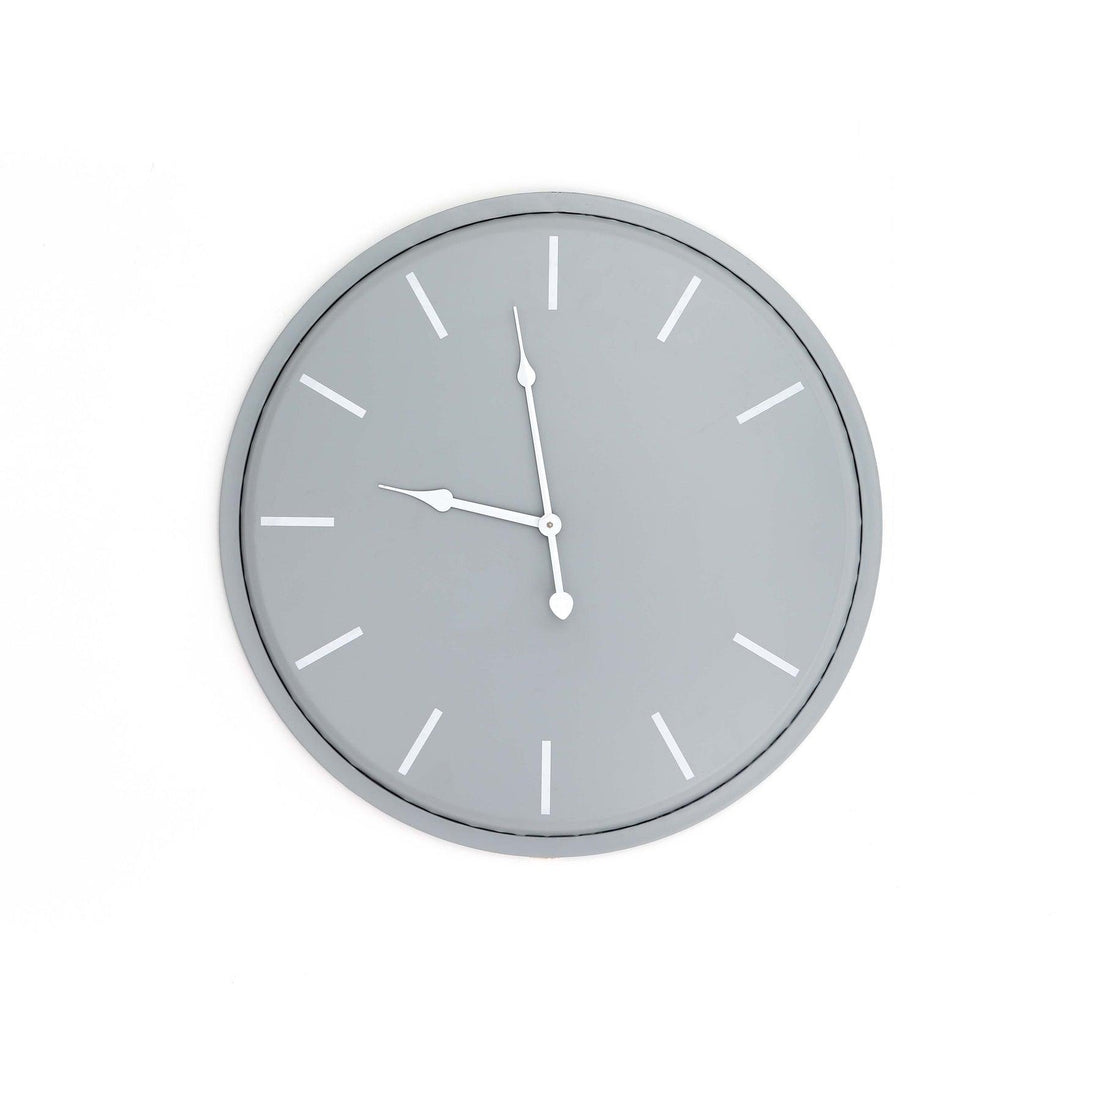 Karlsson Wall Clock - £79.95 - Wall Clocks 